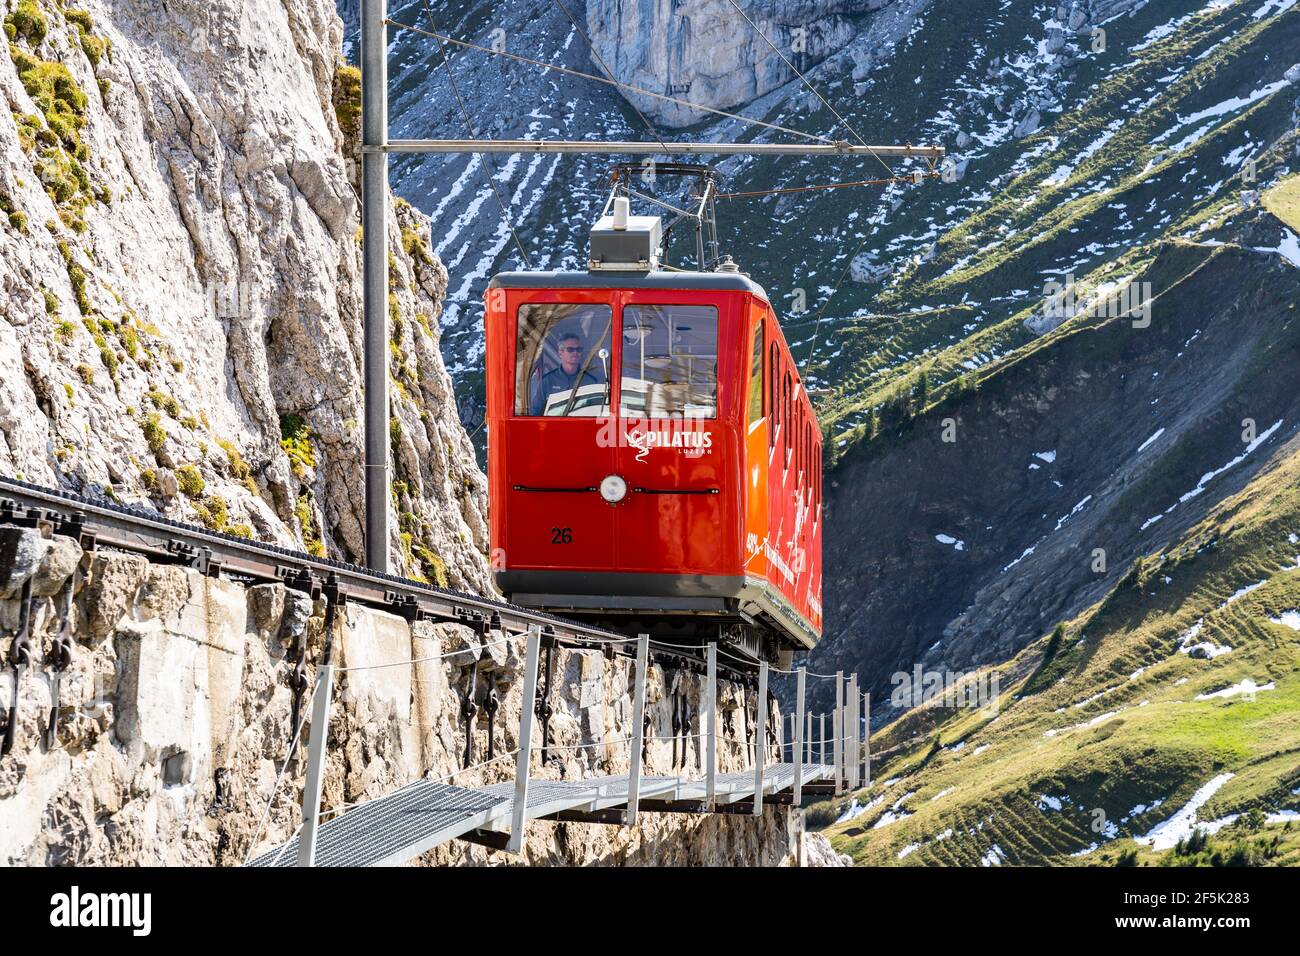 Pilatus, Schweiz - September 30 2020: Die berühmte Zahnradbahn, die steilste der Welt, steigt auf den Gipfel des Pilatus im Kanton Lucern Stockfoto